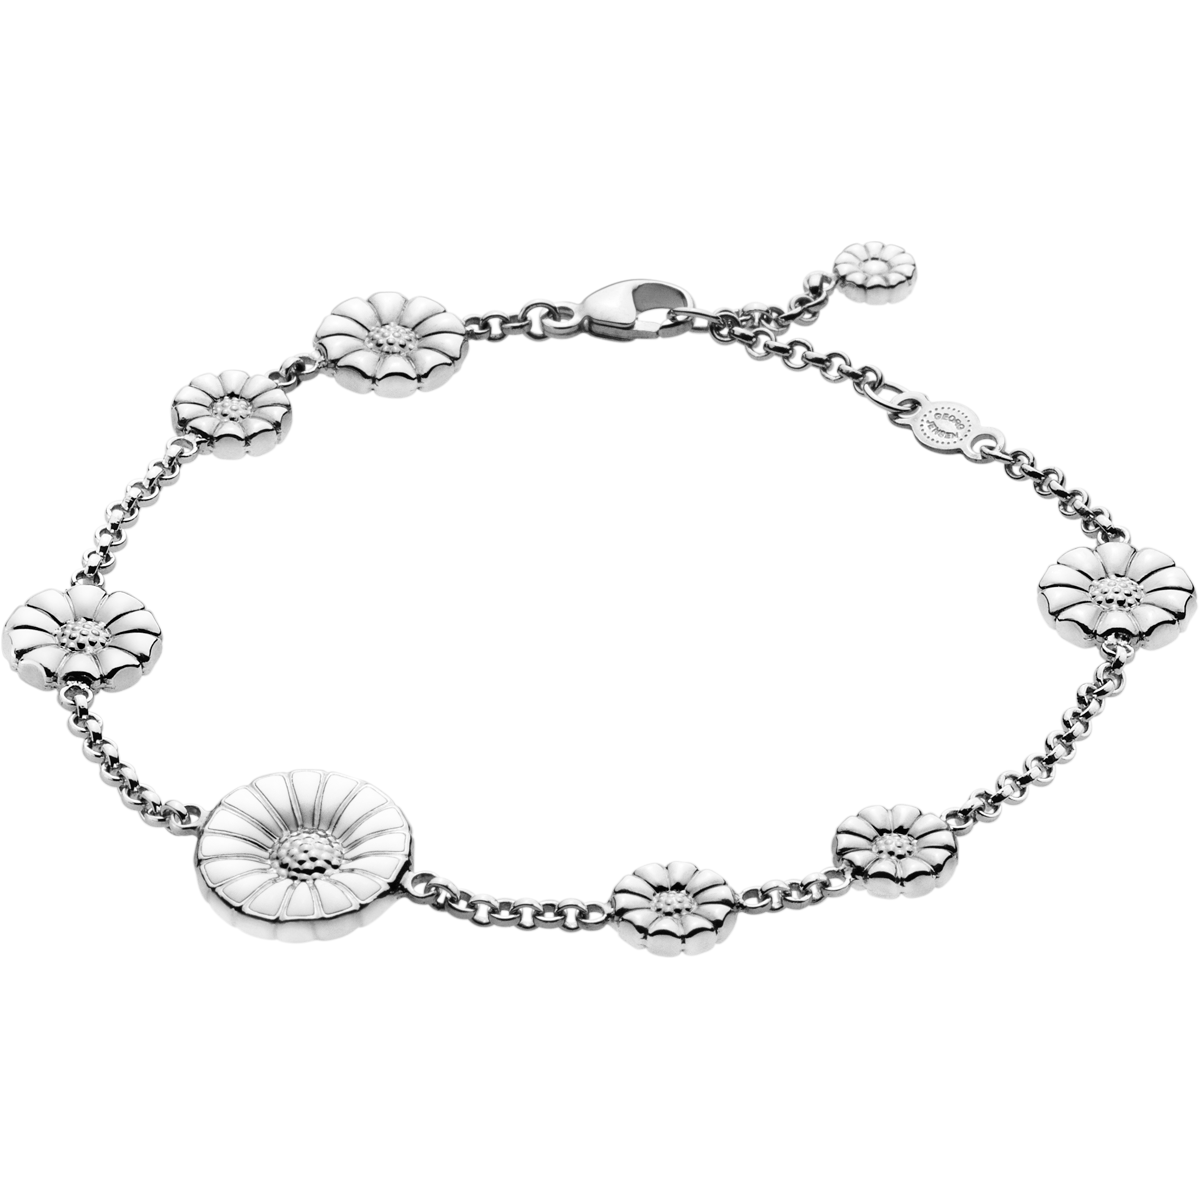 Silver Bracelets for Girls  Silver Filigree by Silver Linings   Silverlinings